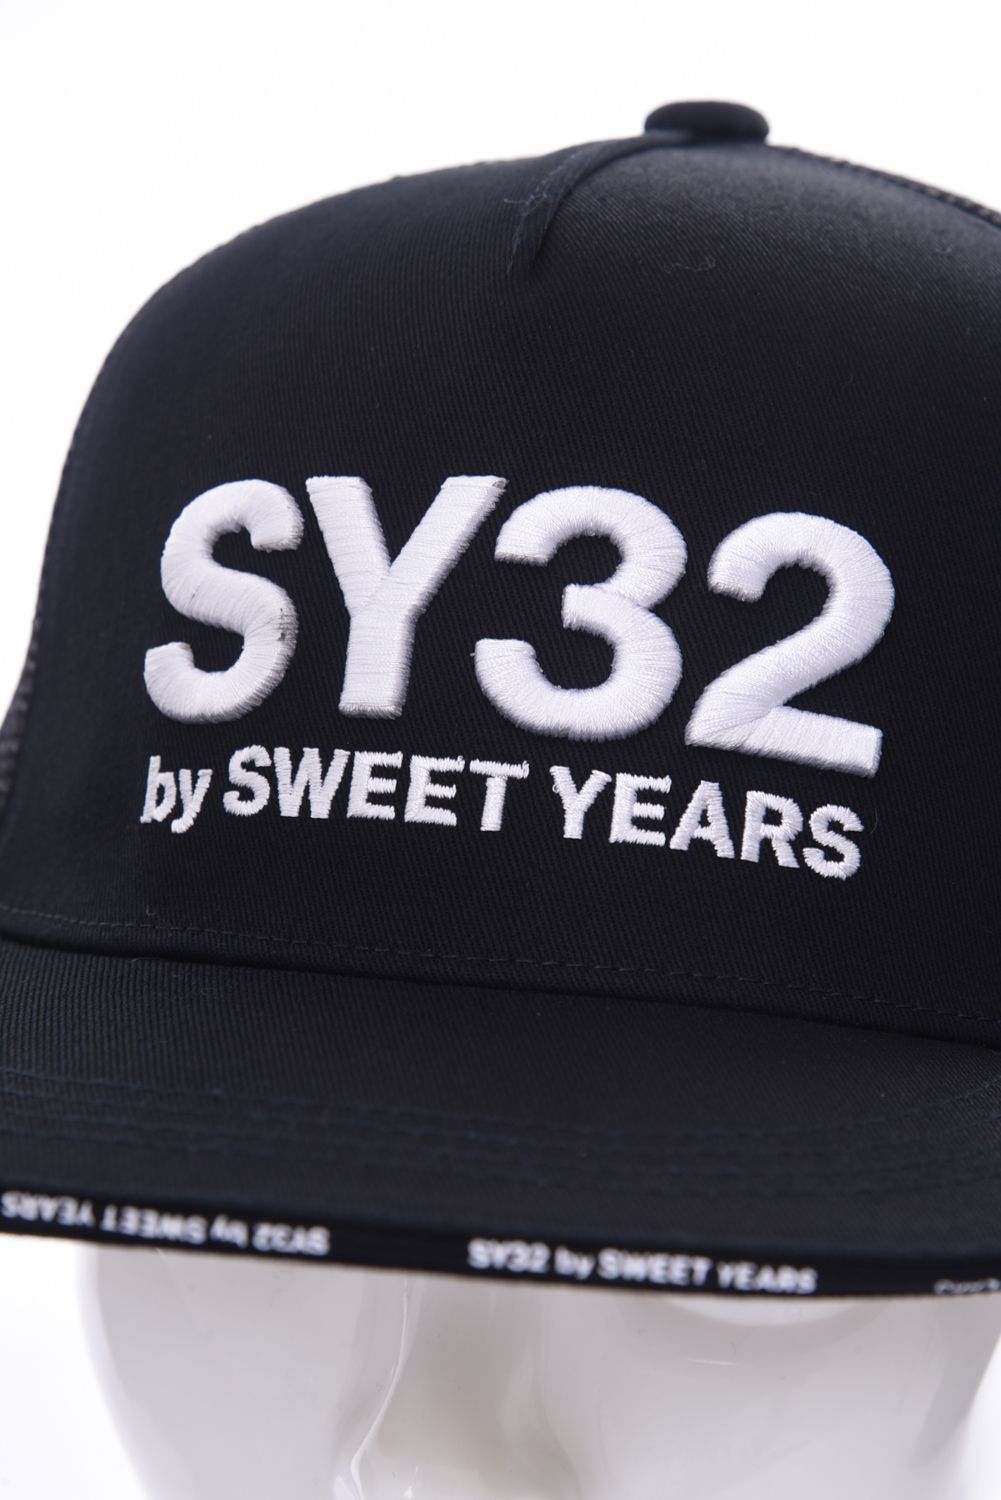 SY32 by SWEET YEARS GOLF - 3D LOGO TRUKER MESH CAP / 3Dロゴ